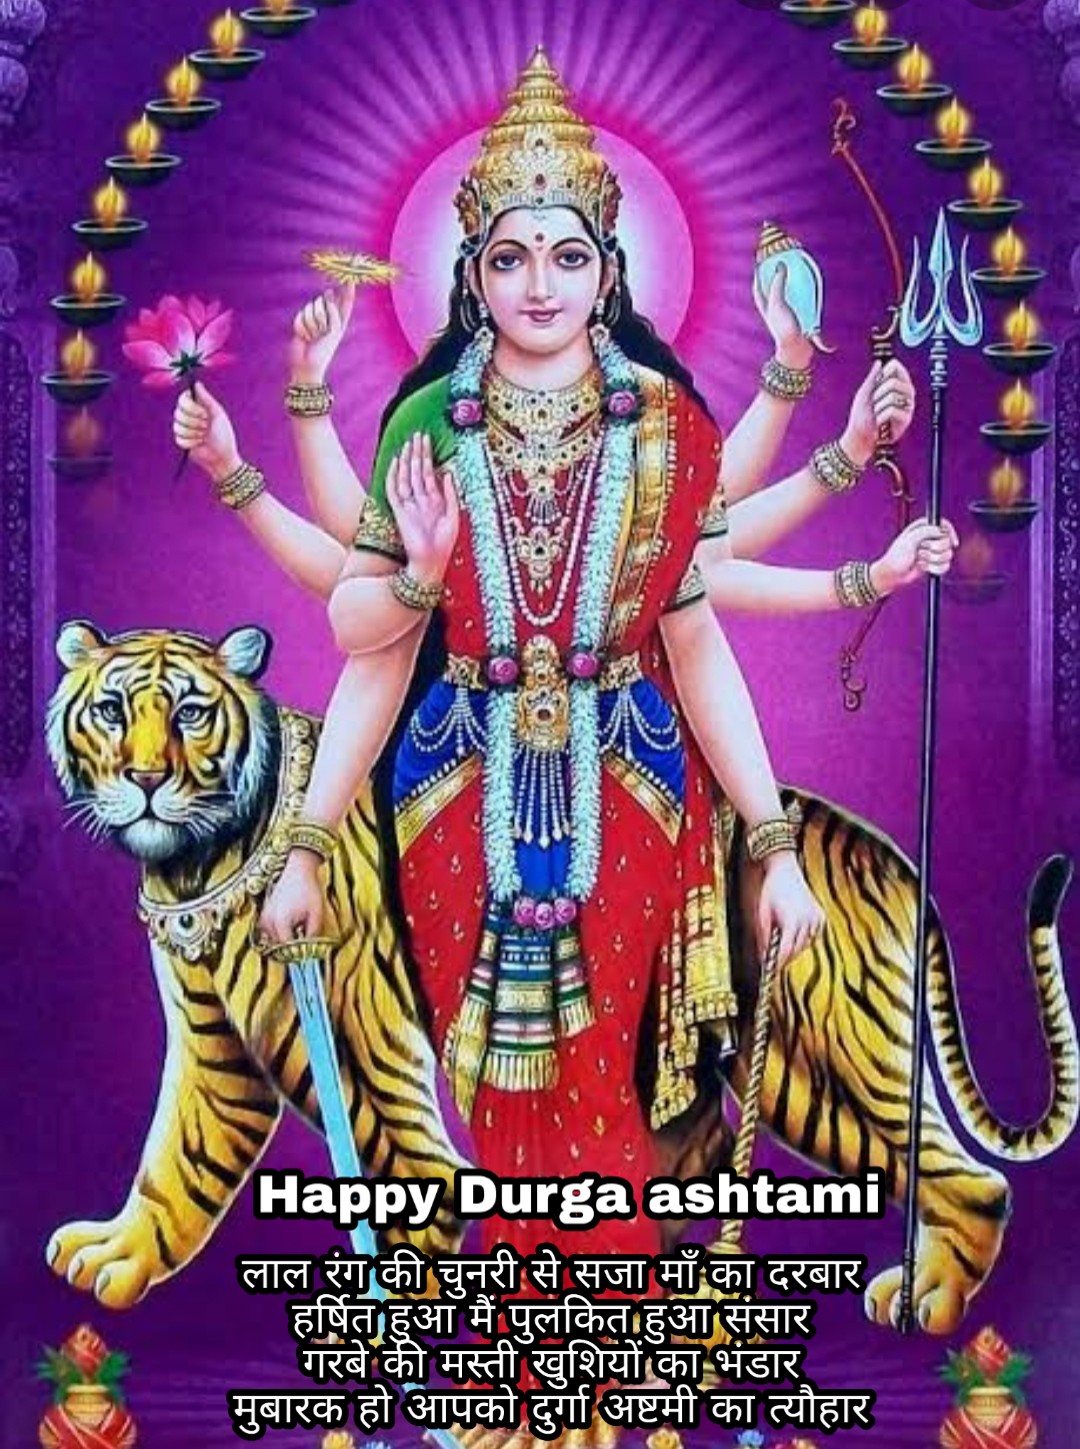 Durga ashtami wishes shayari quotes